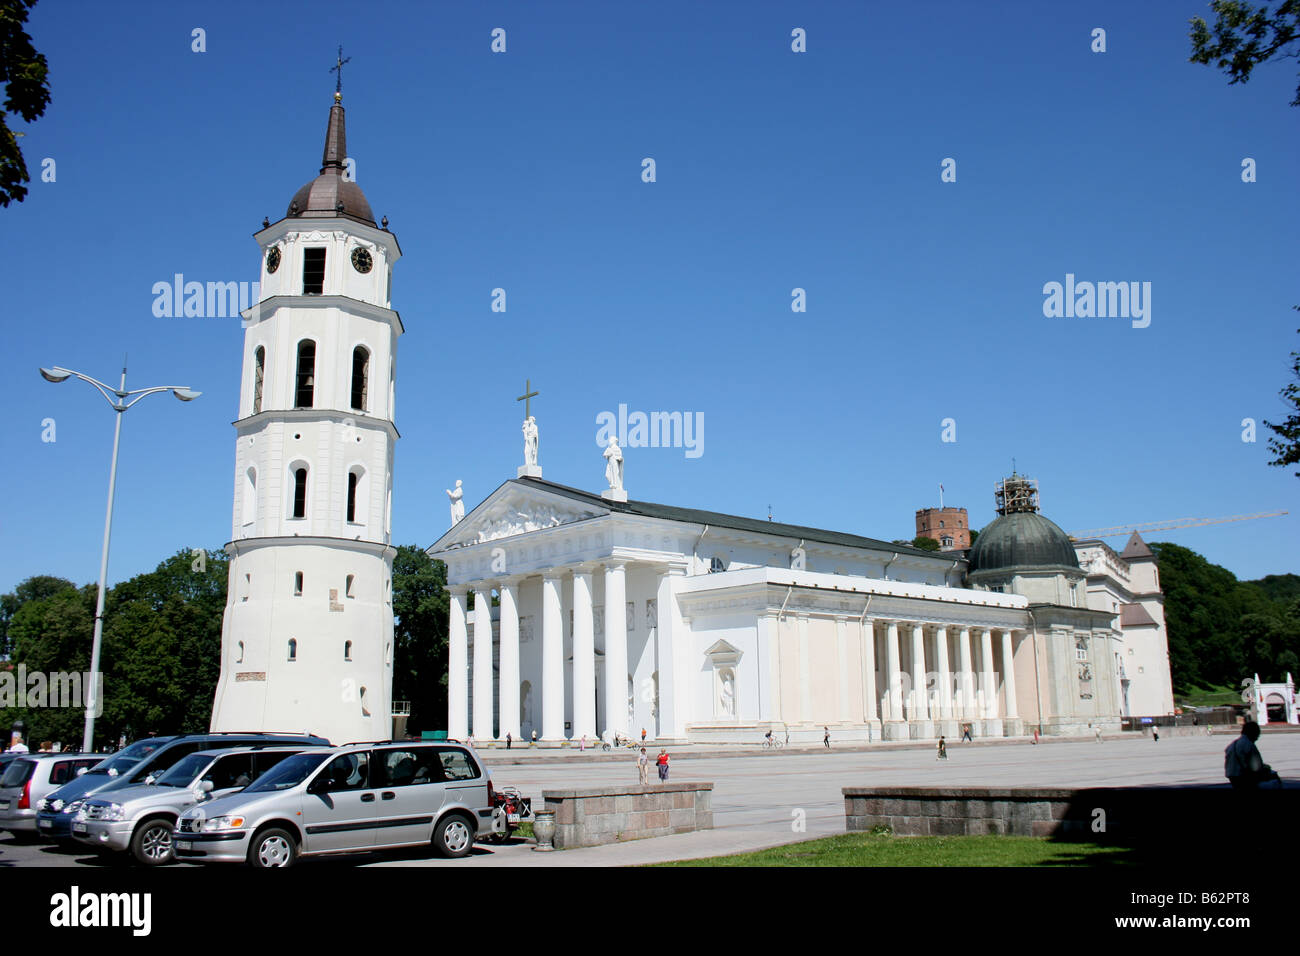 La cathédrale de Vilnius, Lituanie Banque D'Images